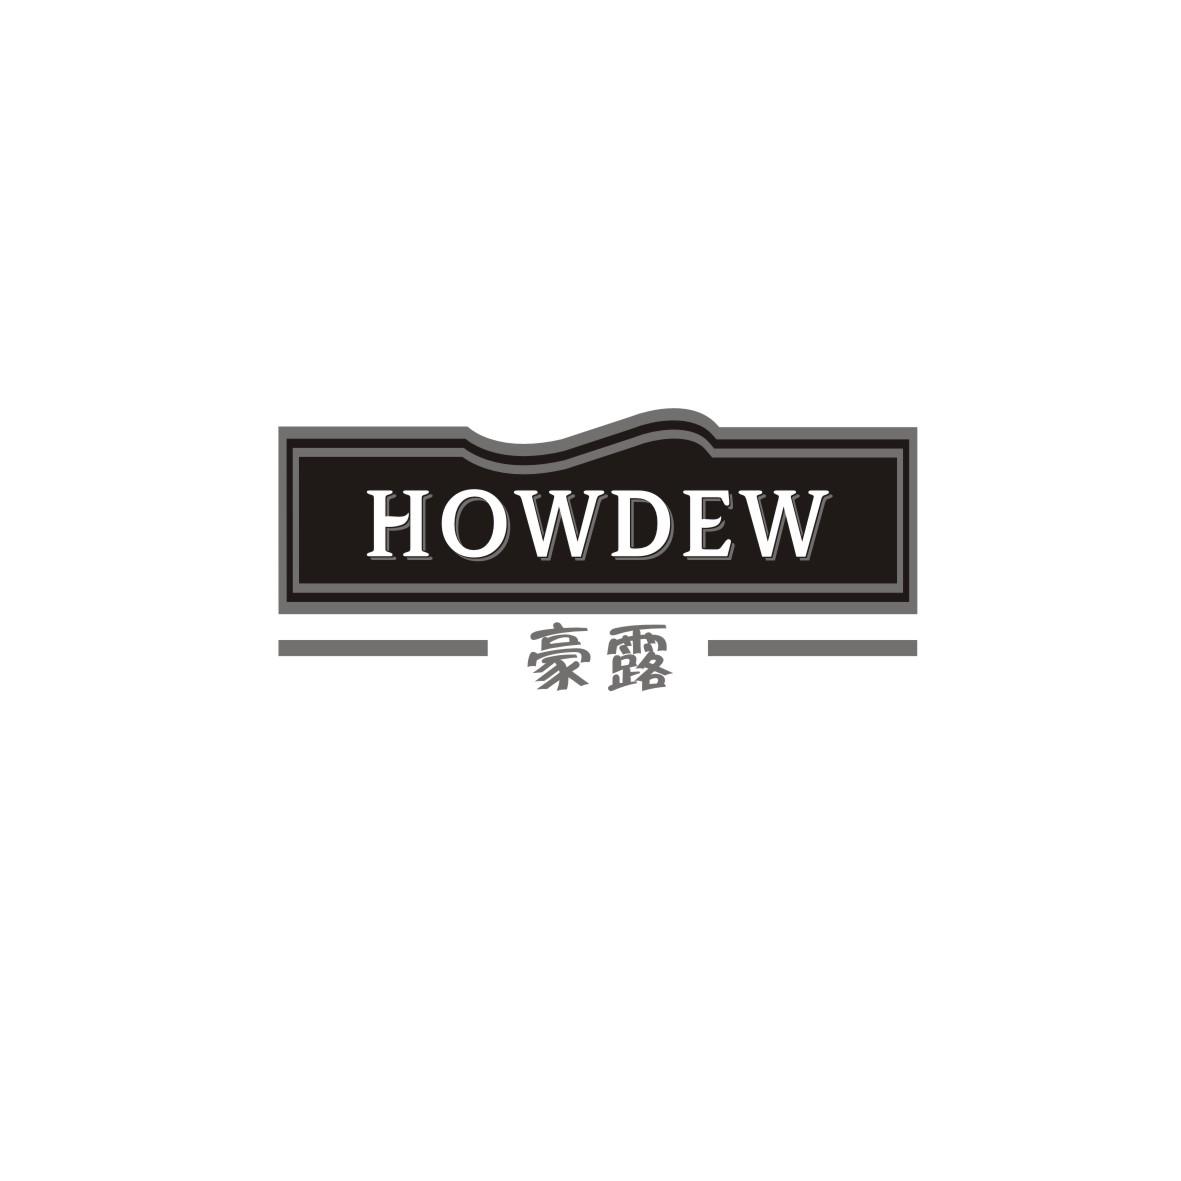 ¶ HOWDEW